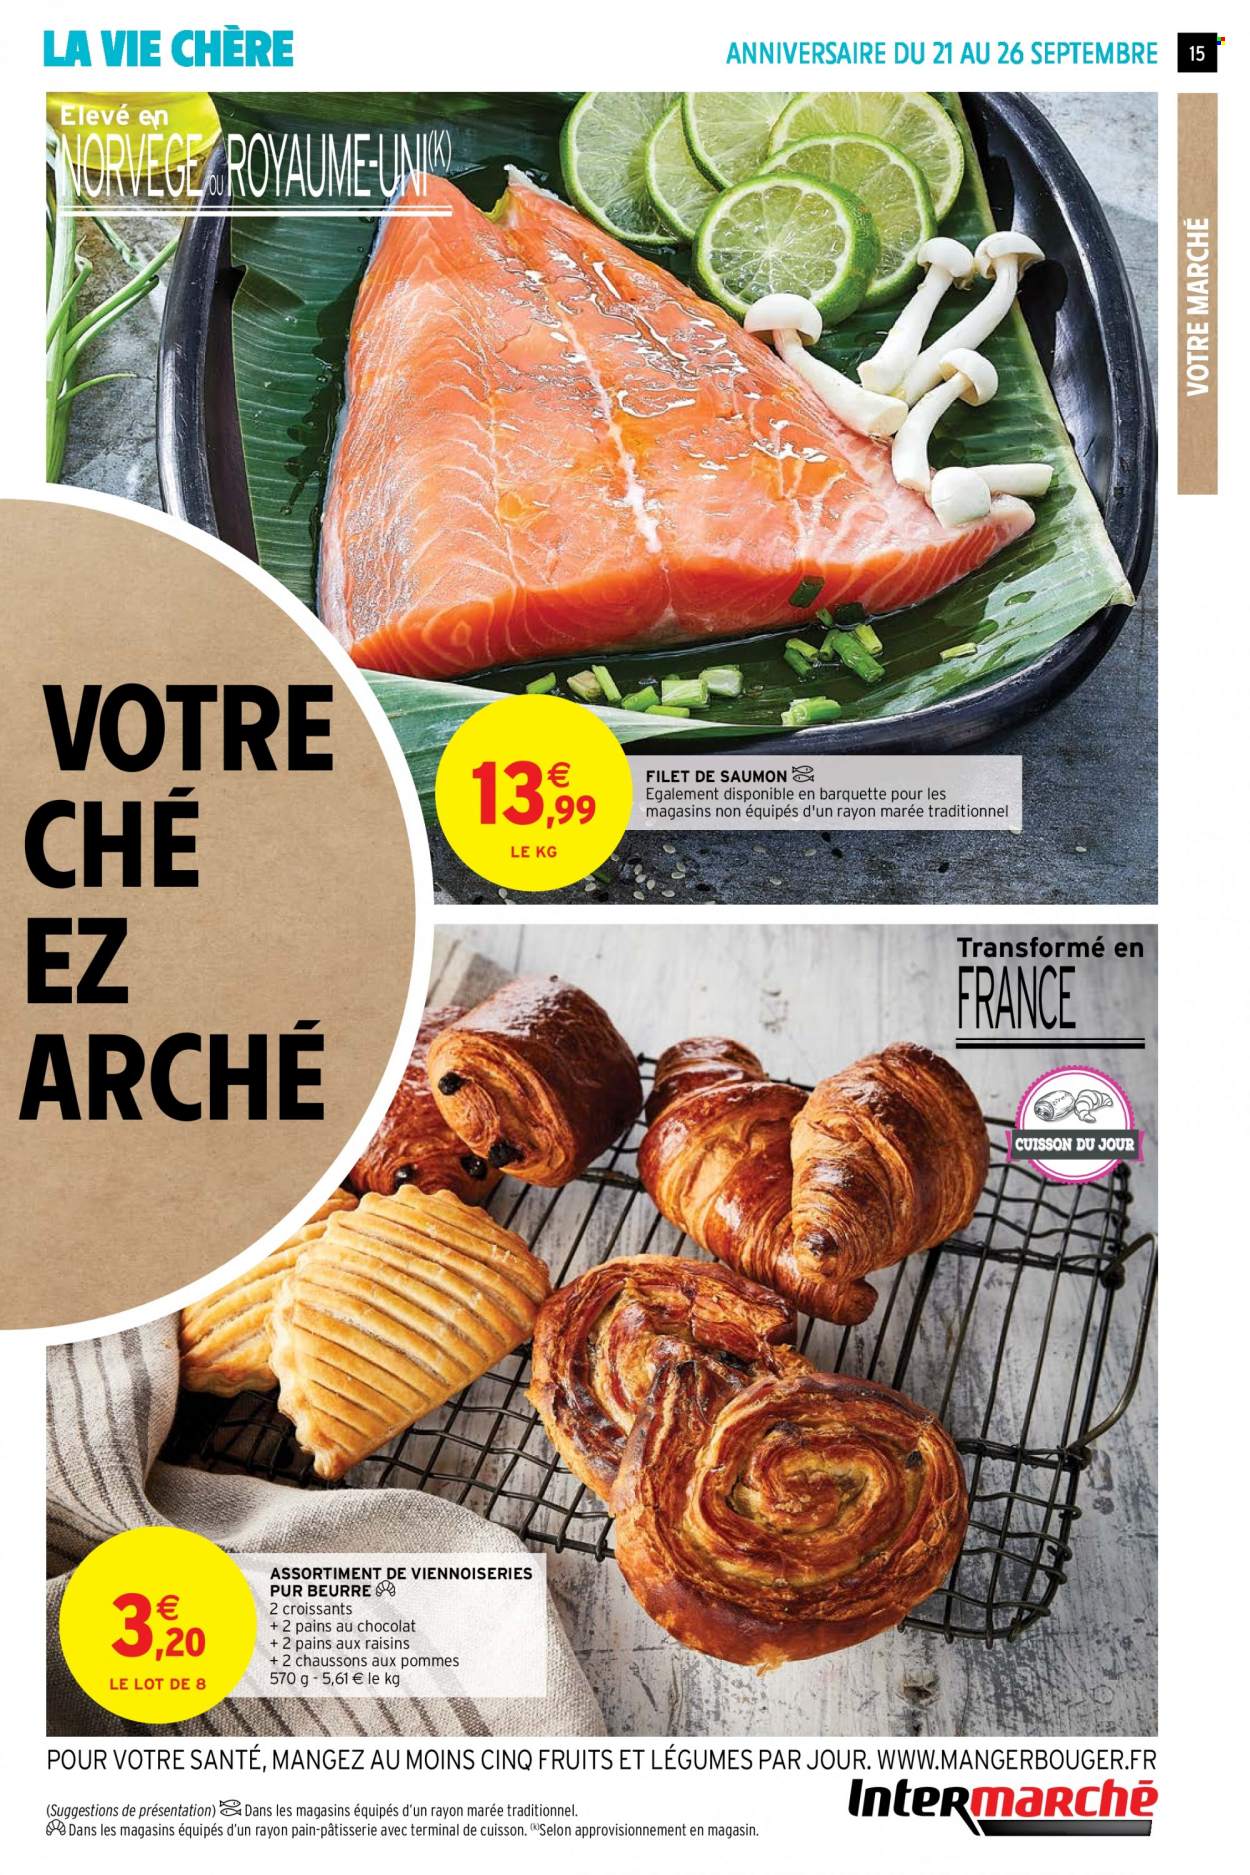 thumbnail - Catalogue Intermarché Super - 21/09/2021 - 26/09/2021 - Produits soldés - chausson, croissant, pain au chocolat, pain aux raisins, chaussons aux pommes, saumon, pavés de saumon. Page 15.